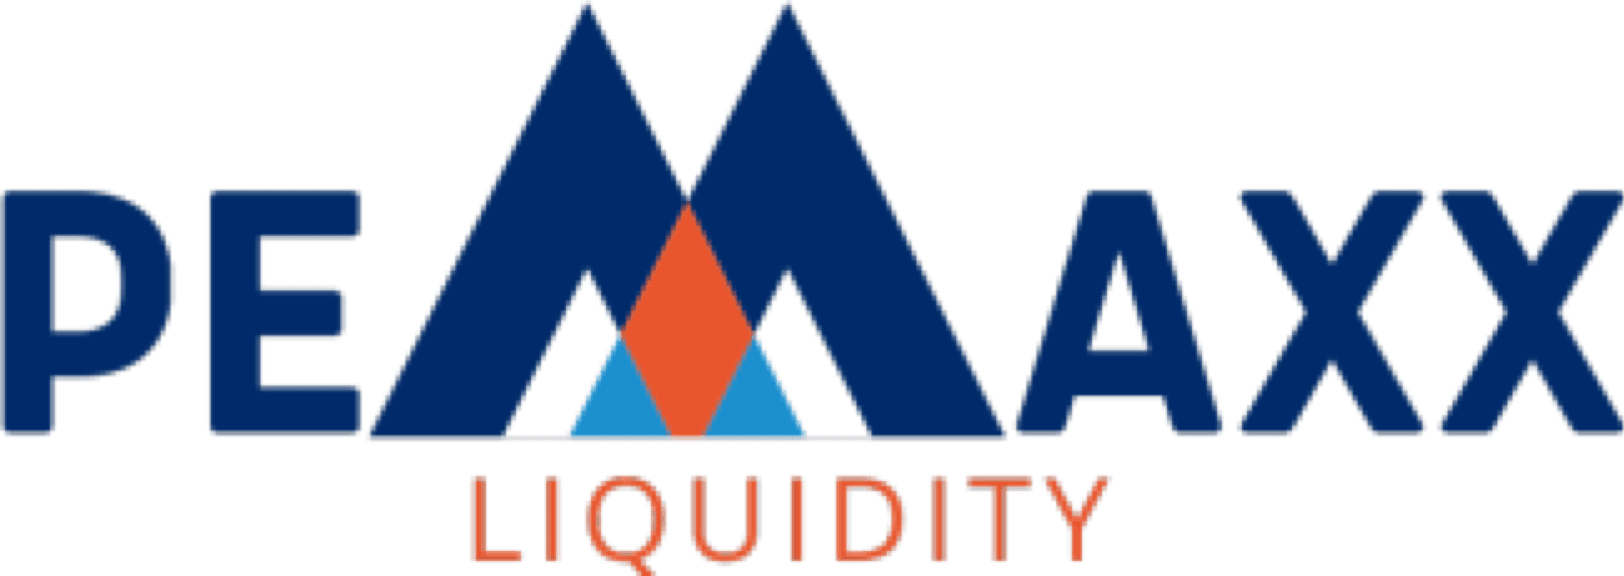 Pemaxx Liquidity